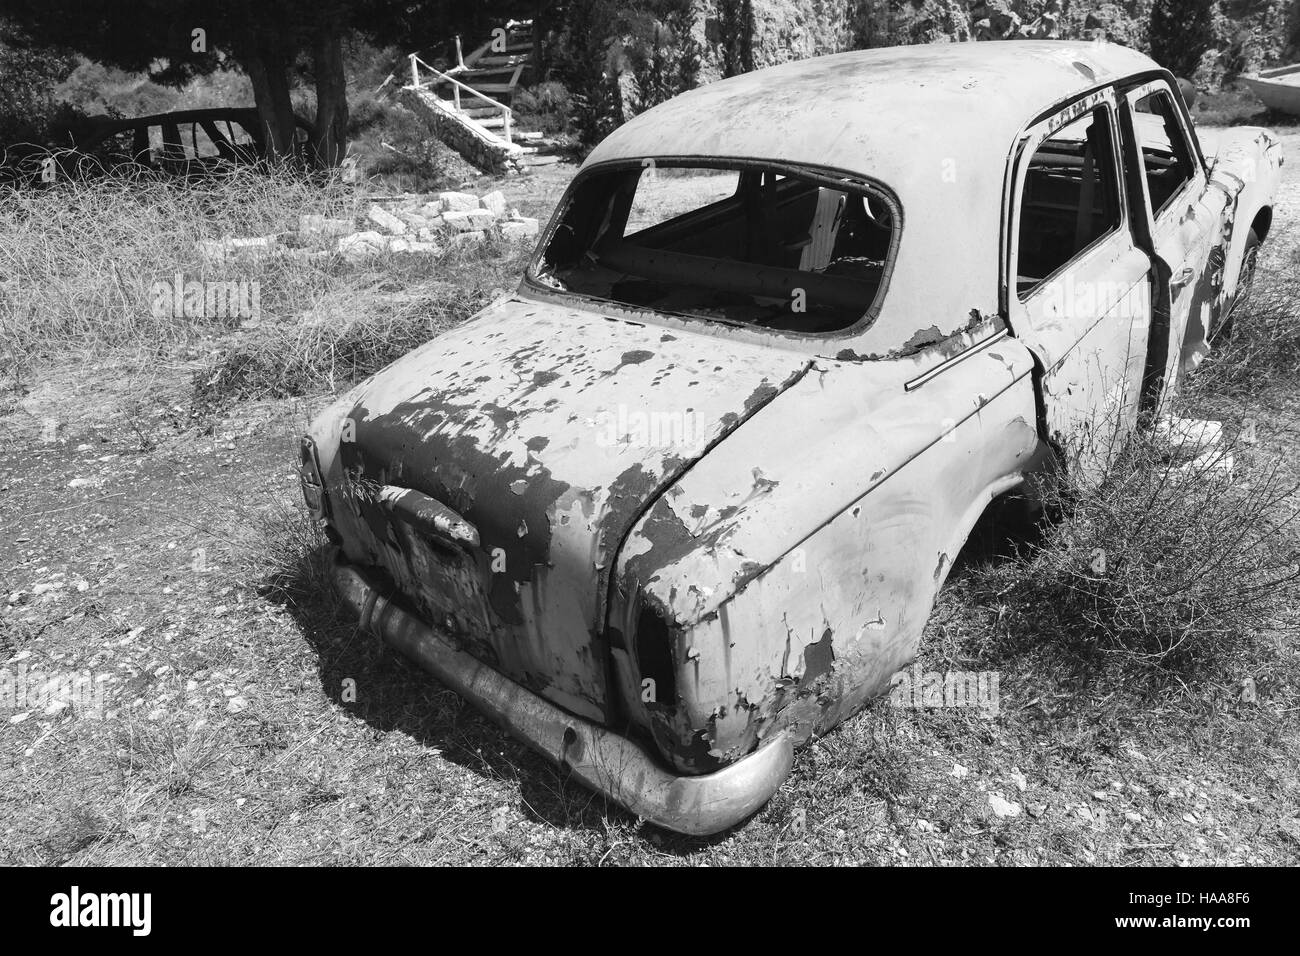 Zante, Grecia - 20 agosto 2016: il vecchio abbandonato auto arrugginite sorge nel giardino estivo, vista posteriore, in bianco e nero Foto Stock